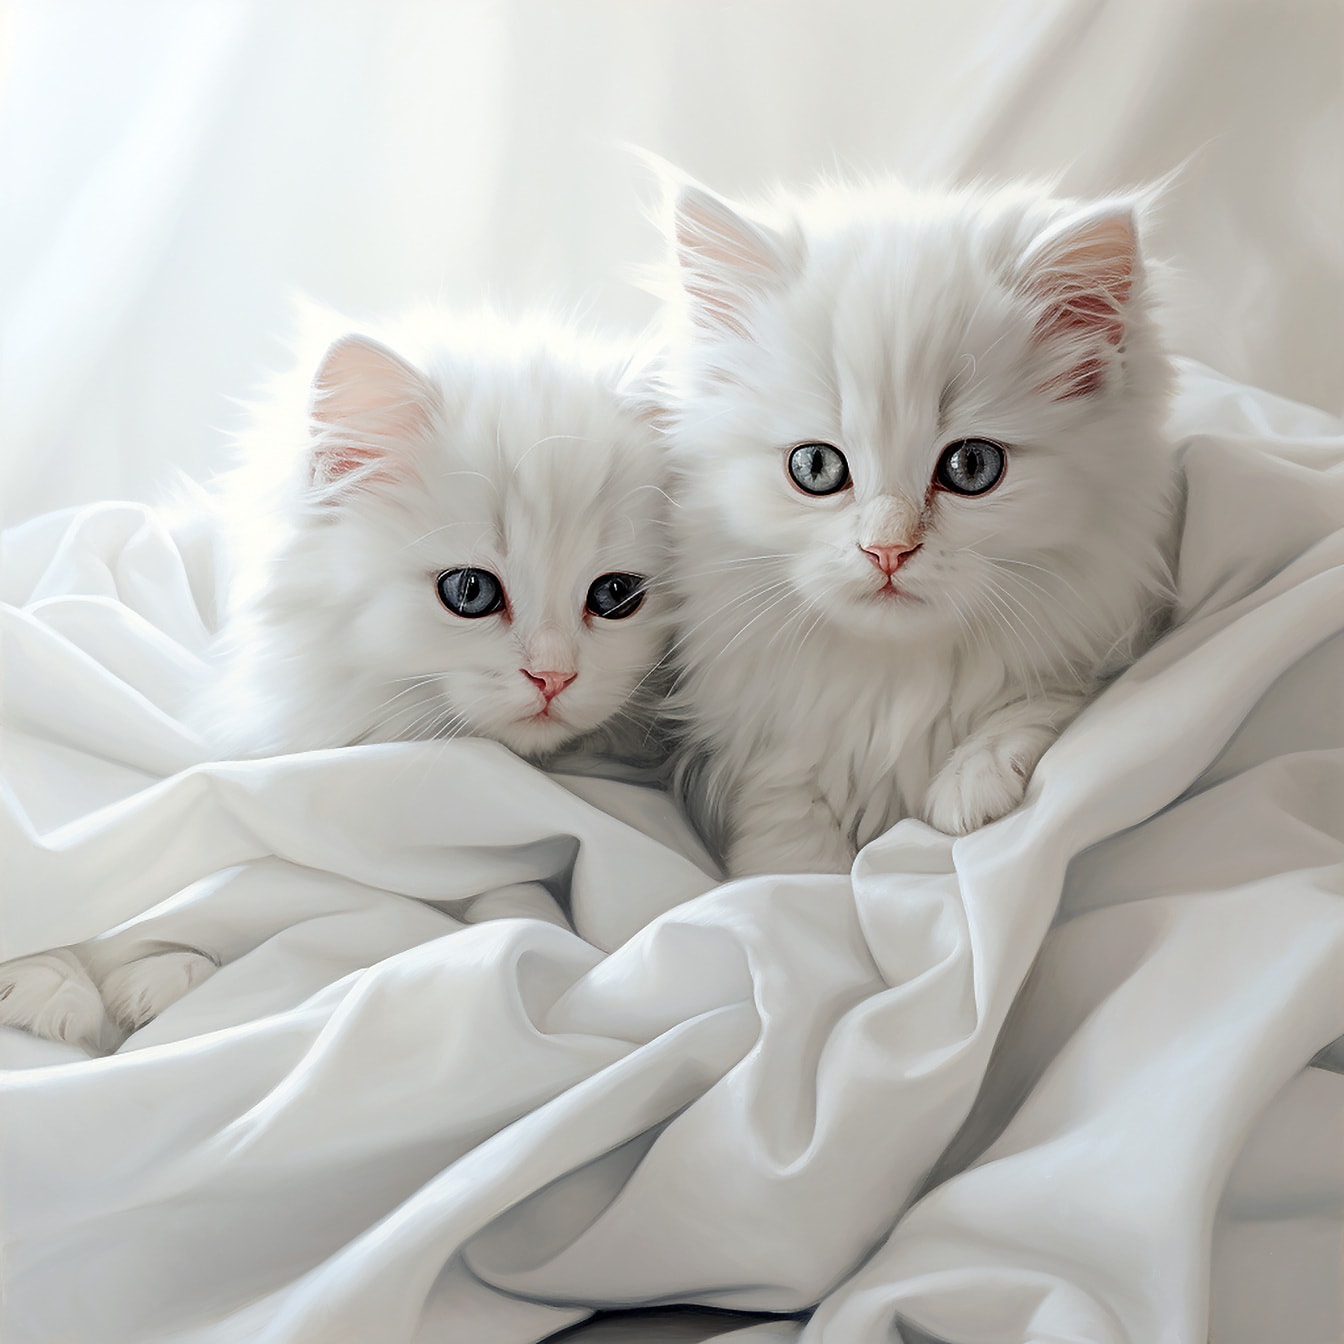 Gatinhos peludos adoráveis em fotografia de estúdio de lona de seda branca